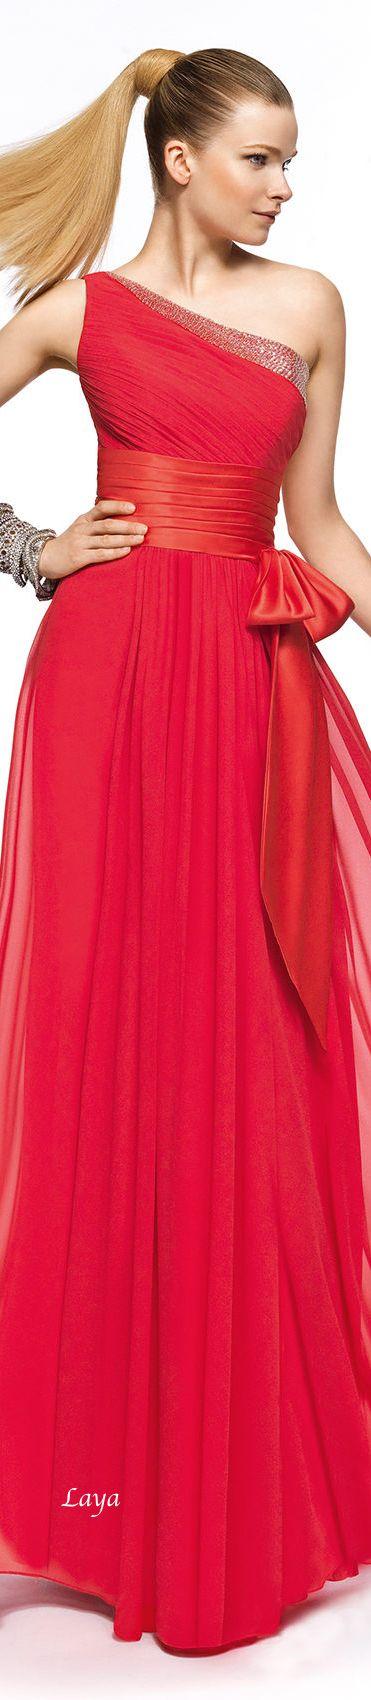 Hochzeit - Gowns...Ravishing Reds